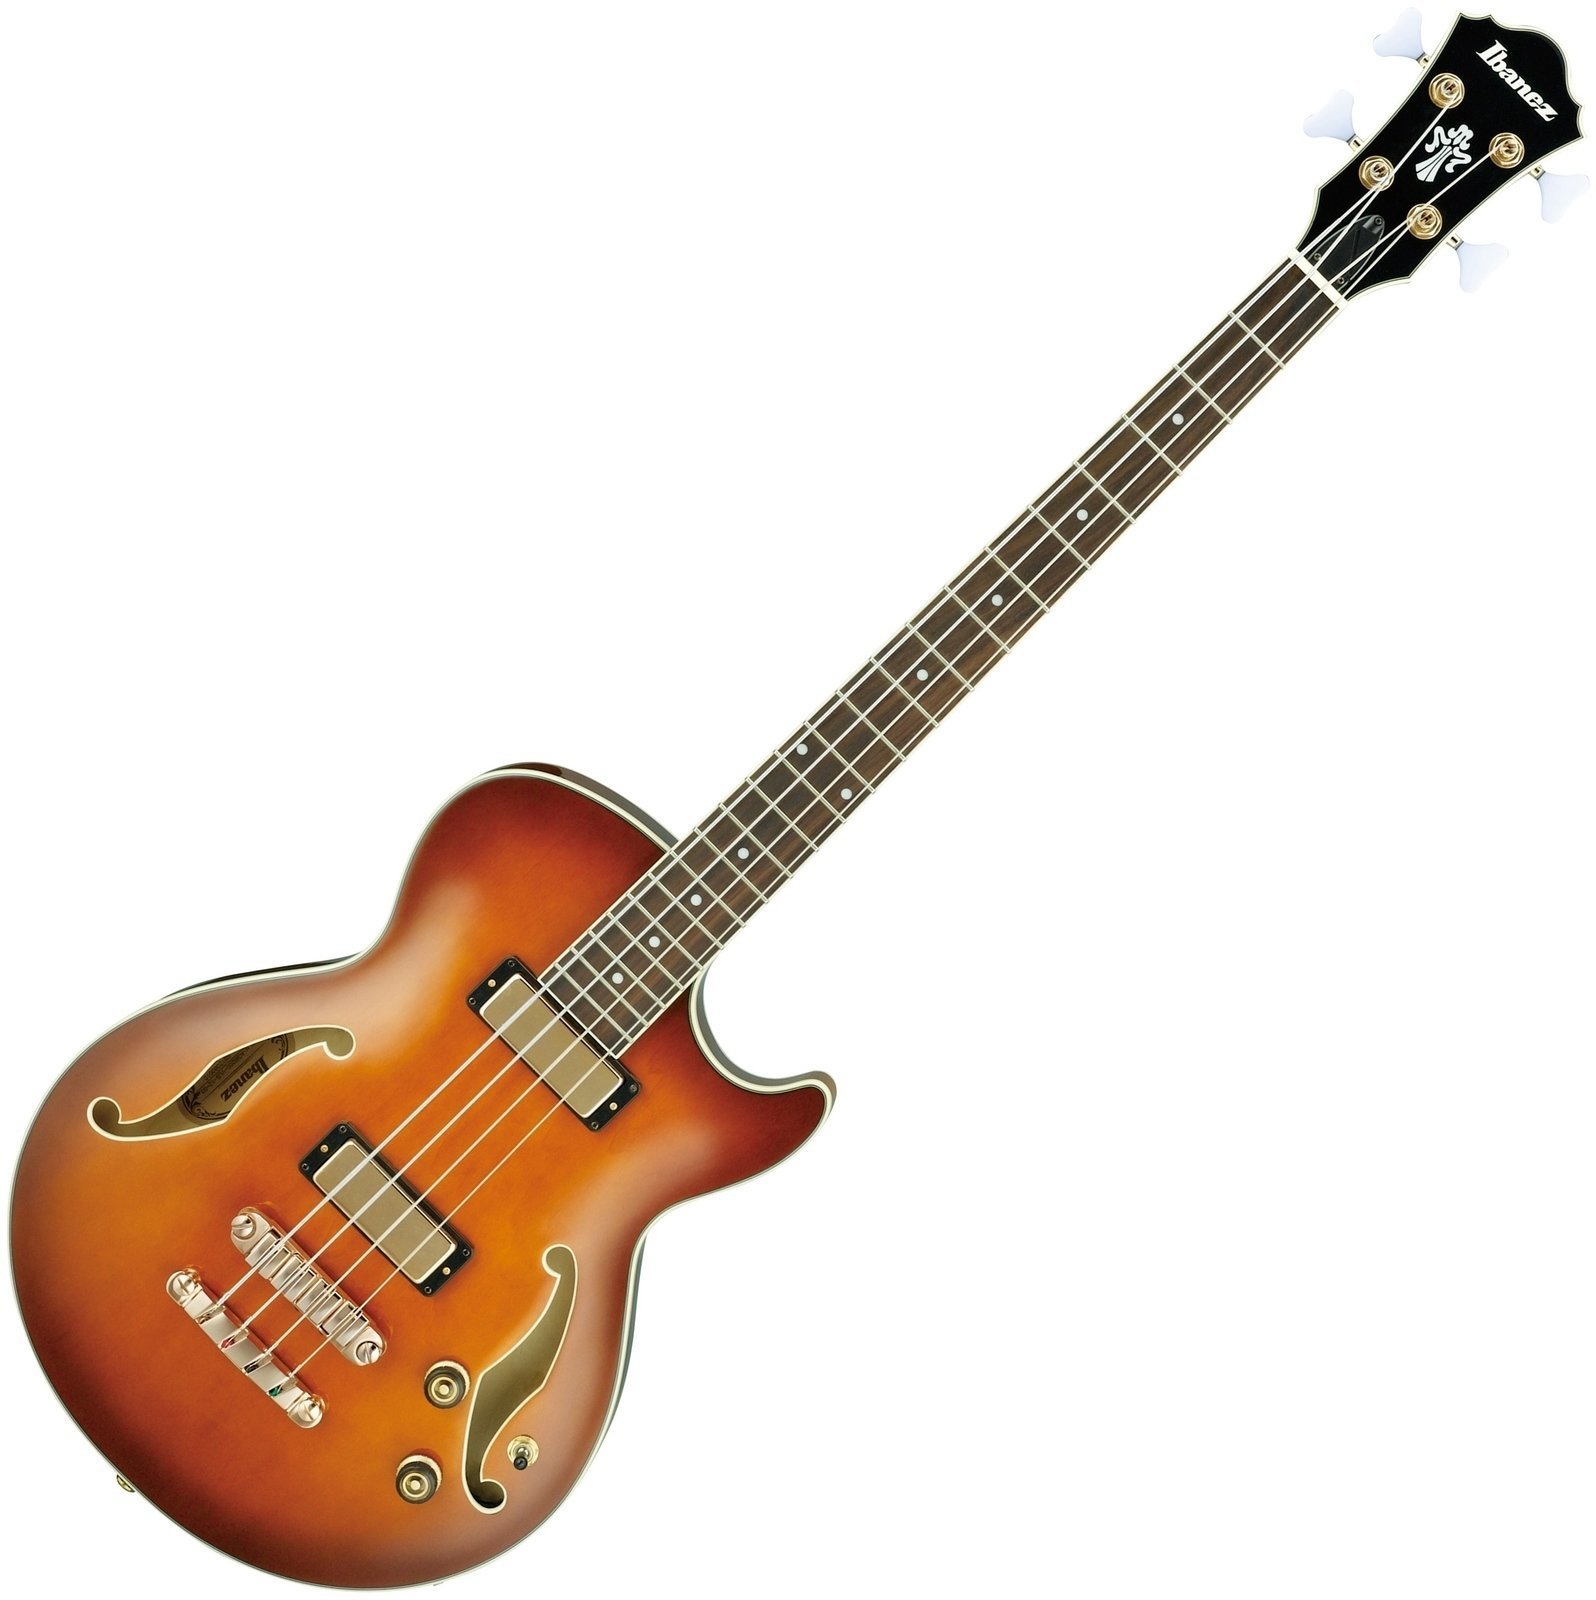 Jazz bas gitara Ibanez AGB 200 P Violin Sunburst